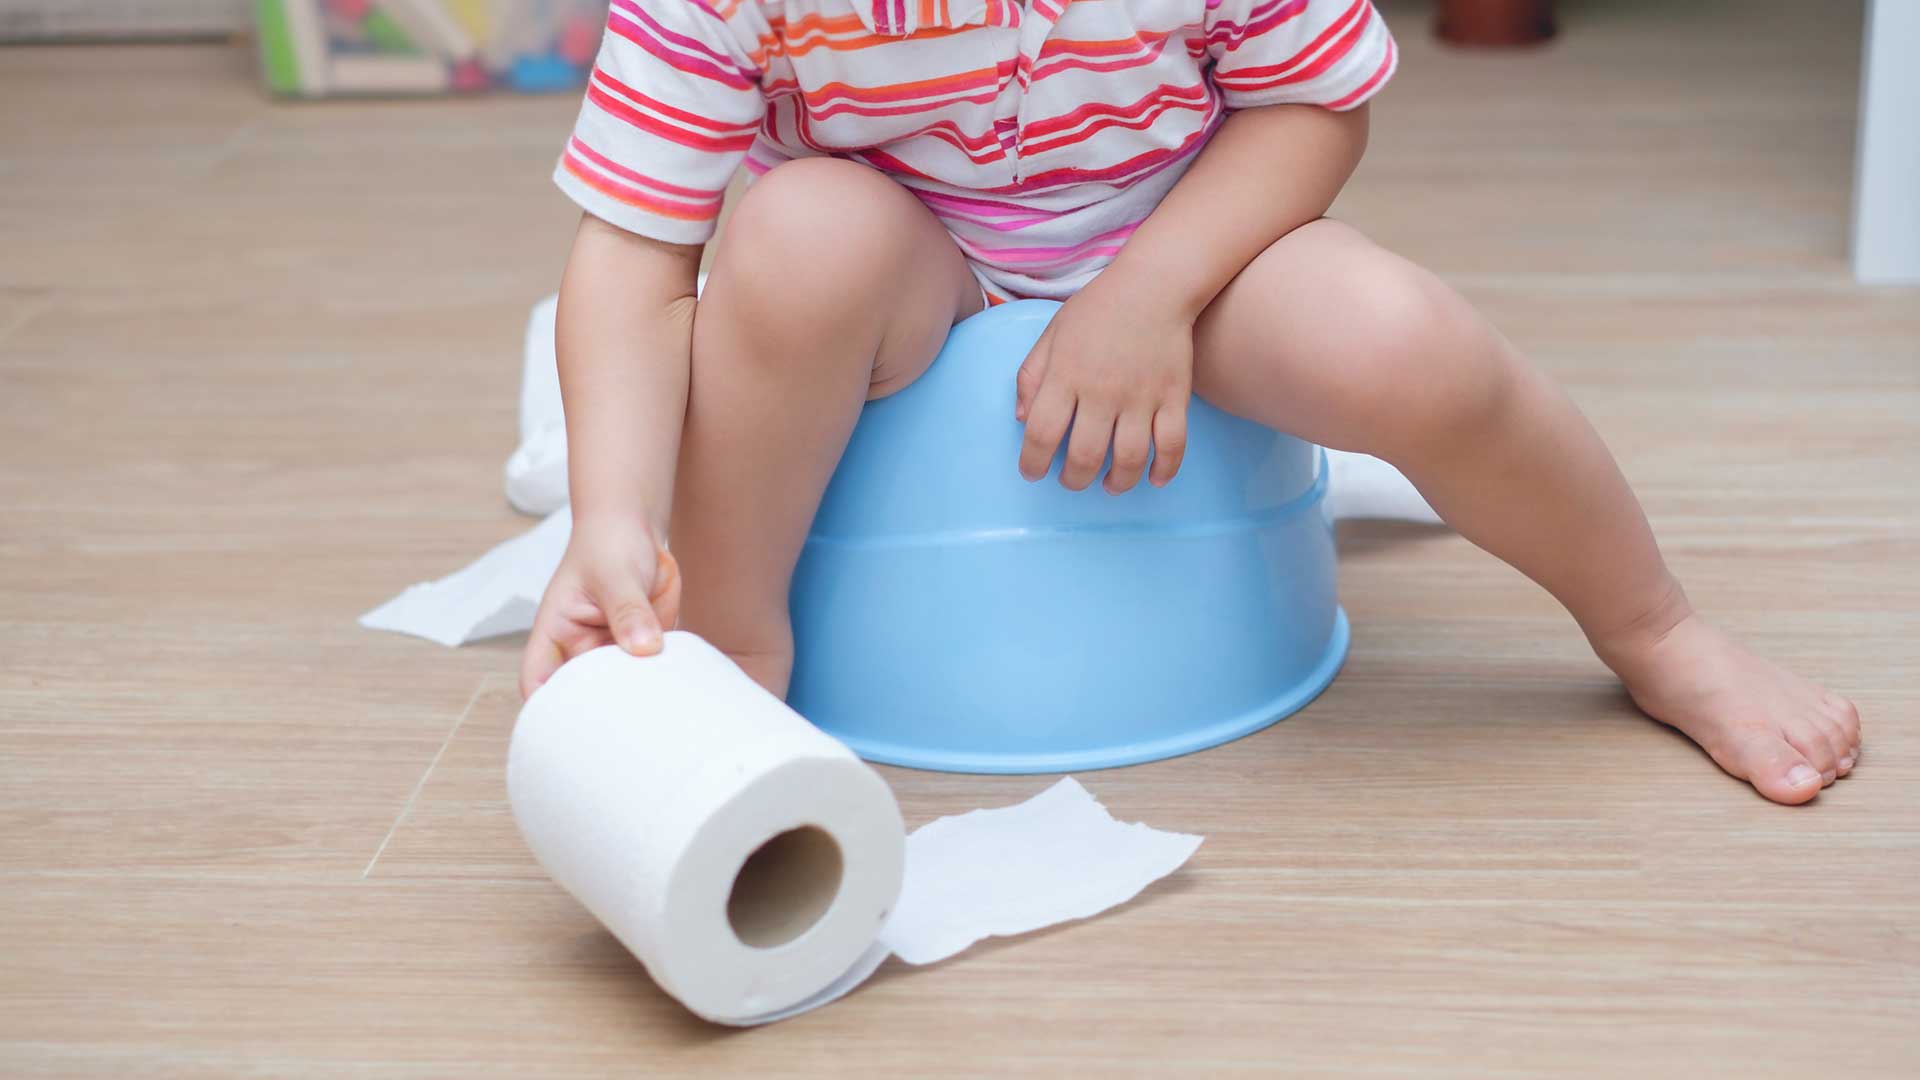 Uma criança, do tronco para baixo, sentada em um penico azul, esticando a mão para alcançar um rolo de papel higiênico